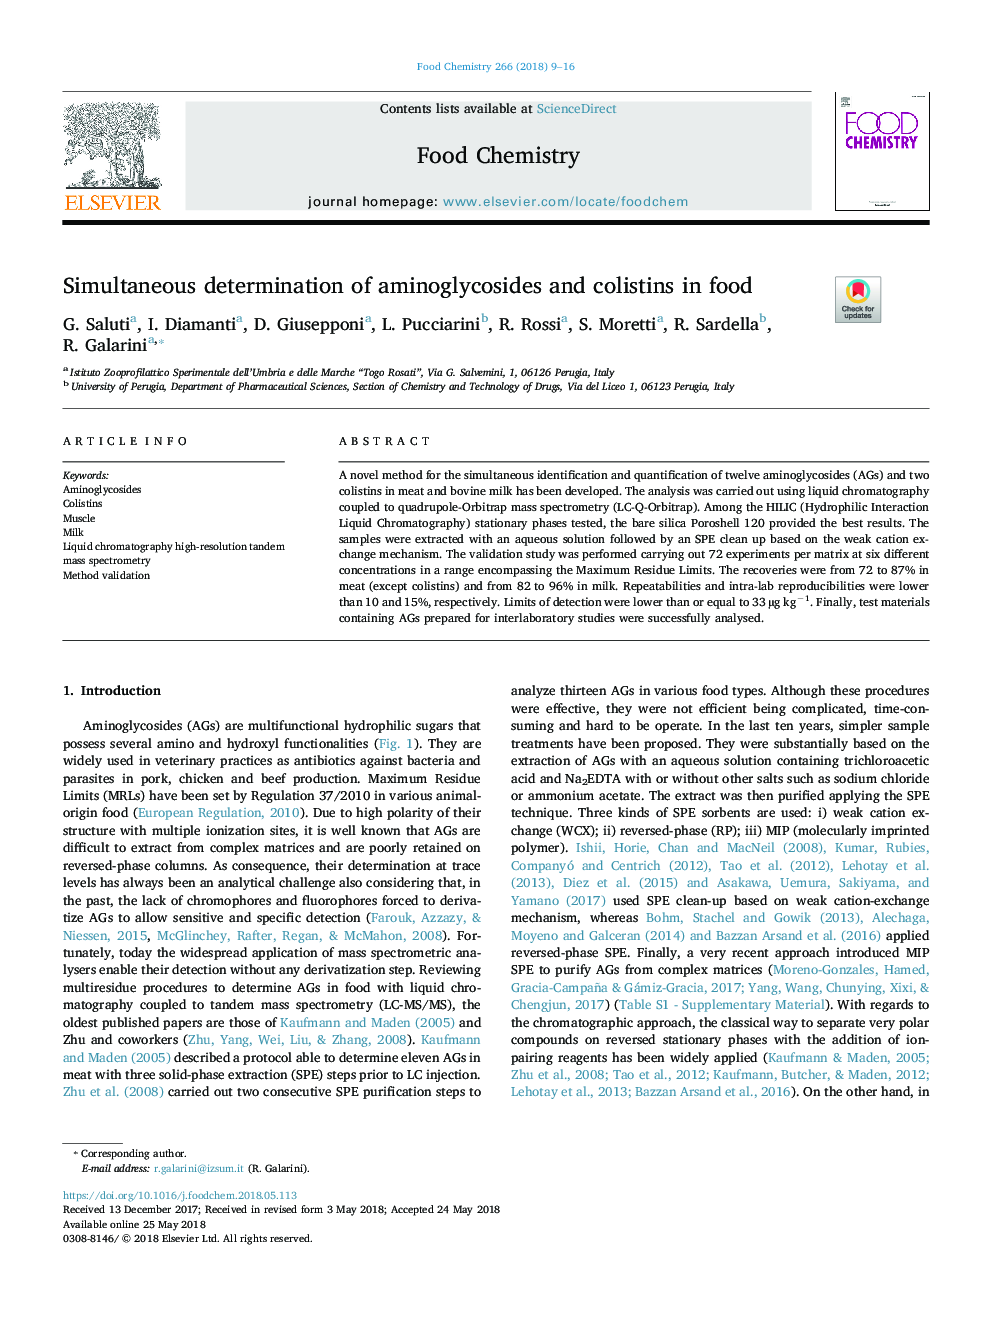 تعیین همزمان آمینوگلیکوزید ها و کلستین ها در مواد غذایی 